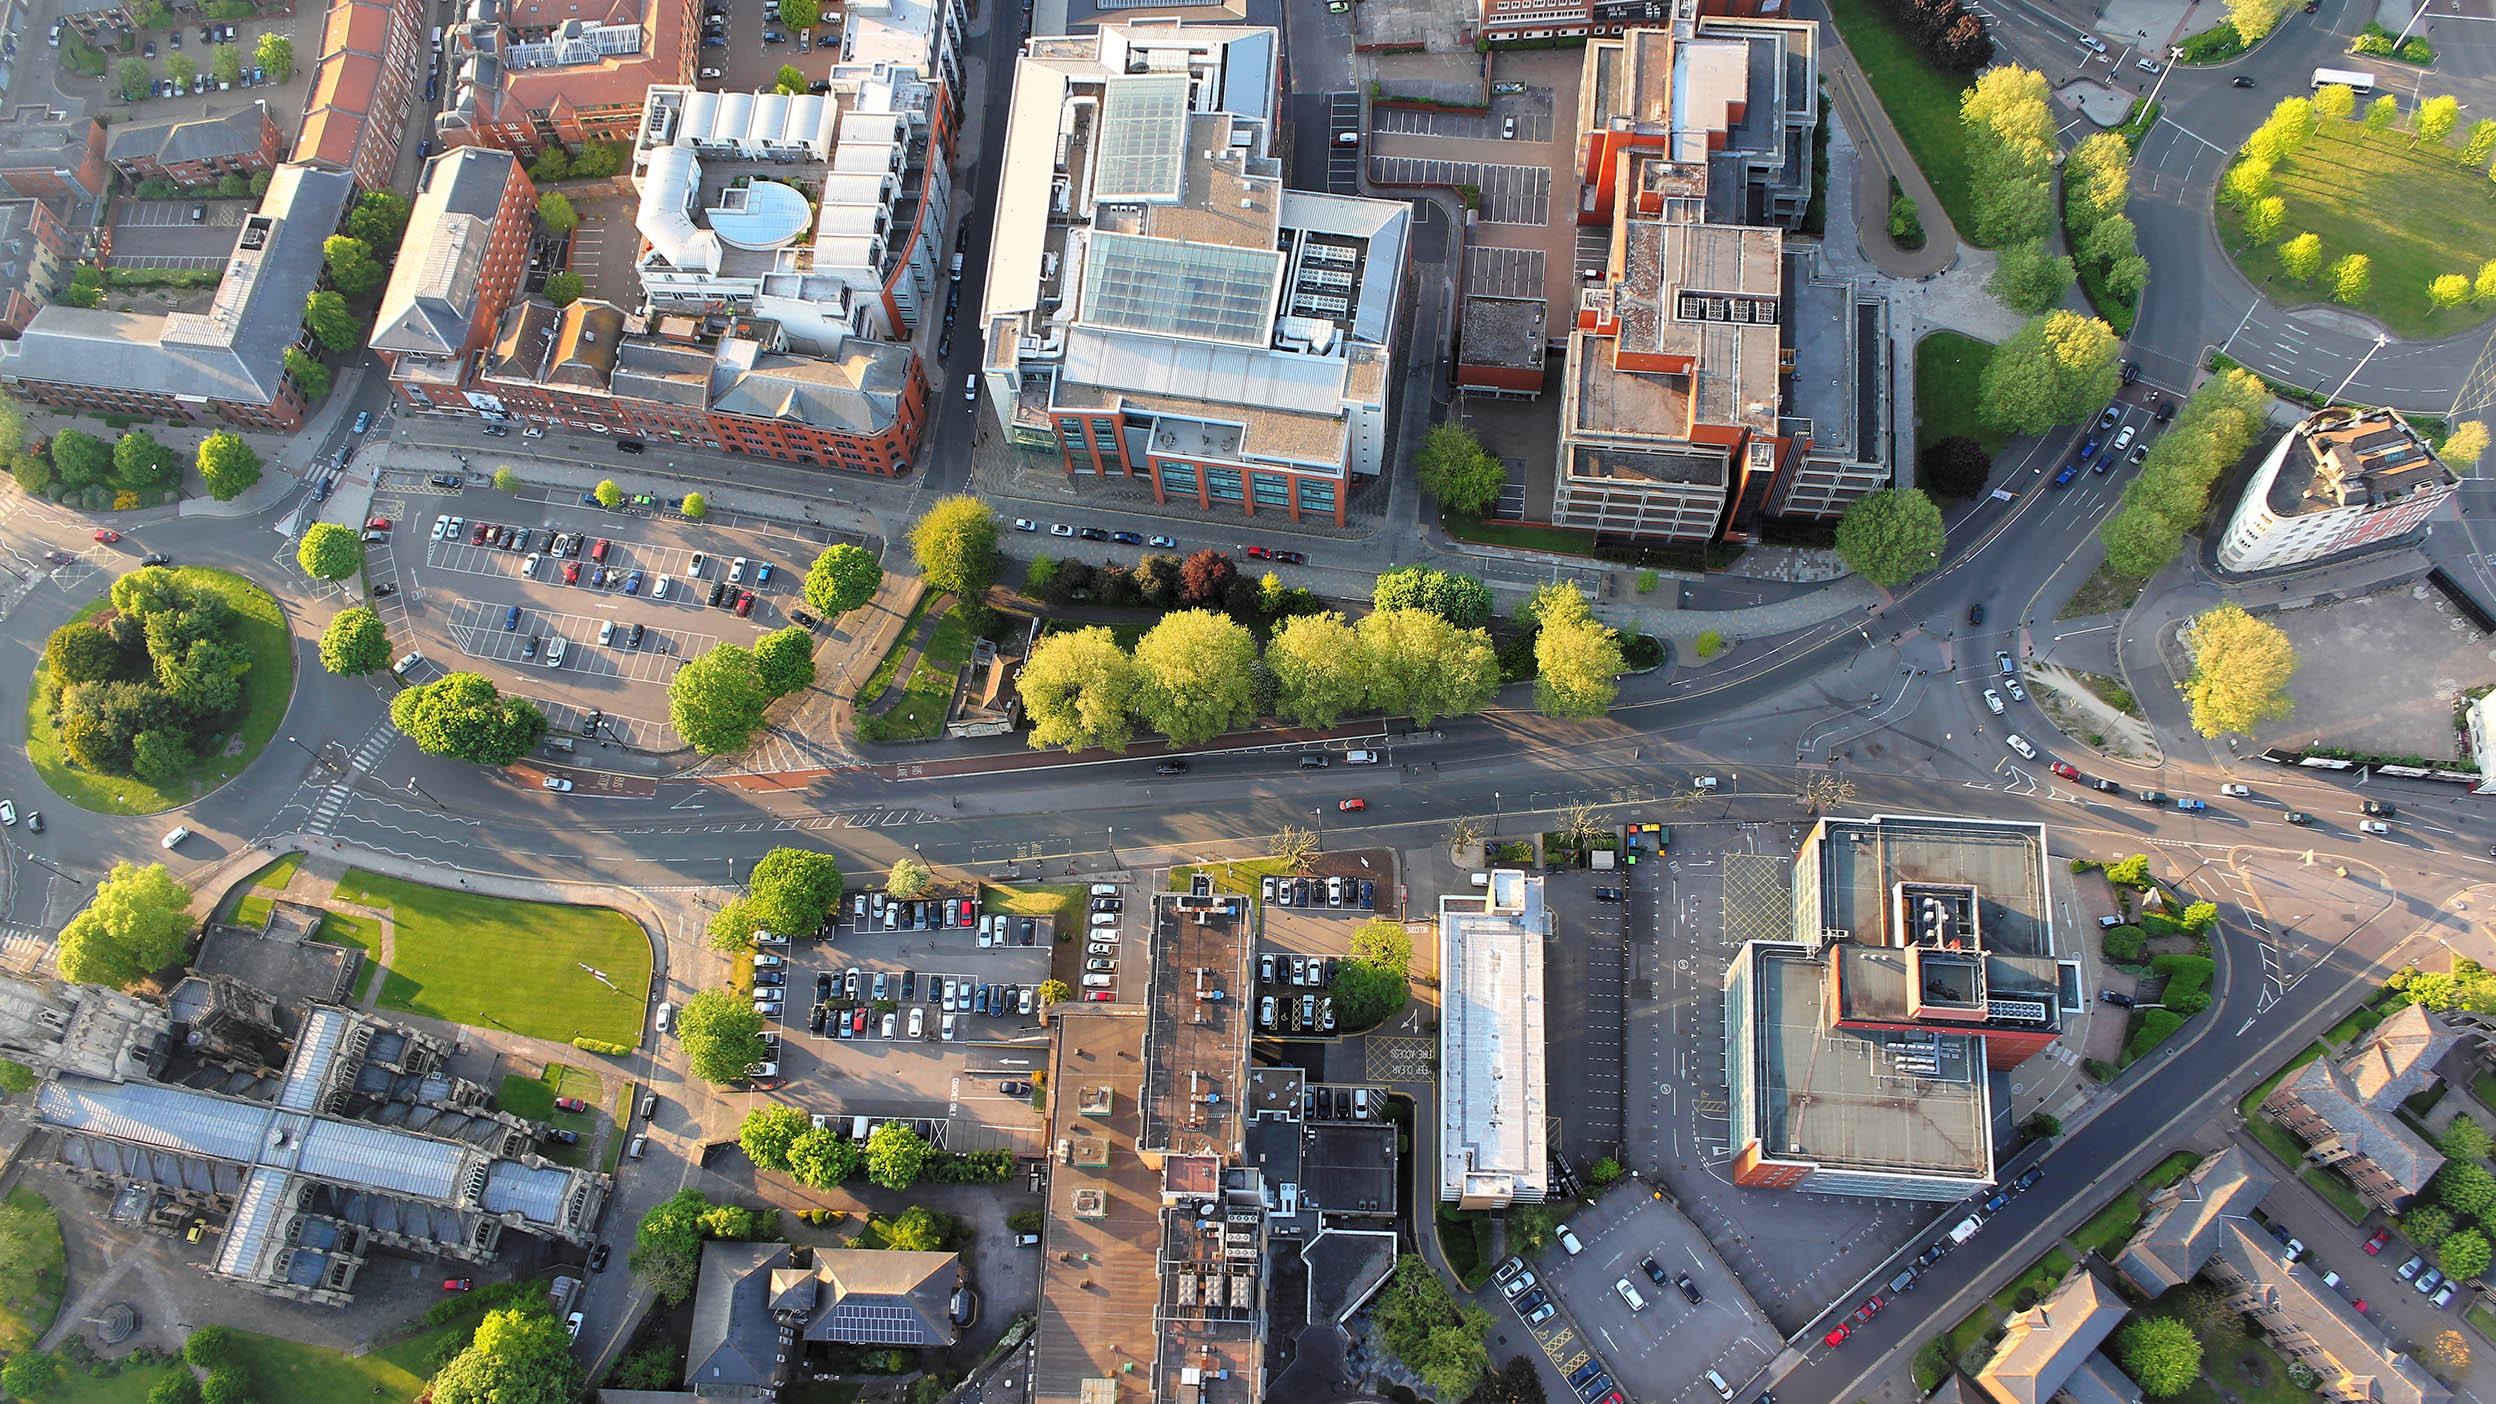 Aerial view of streets in neighborhood.